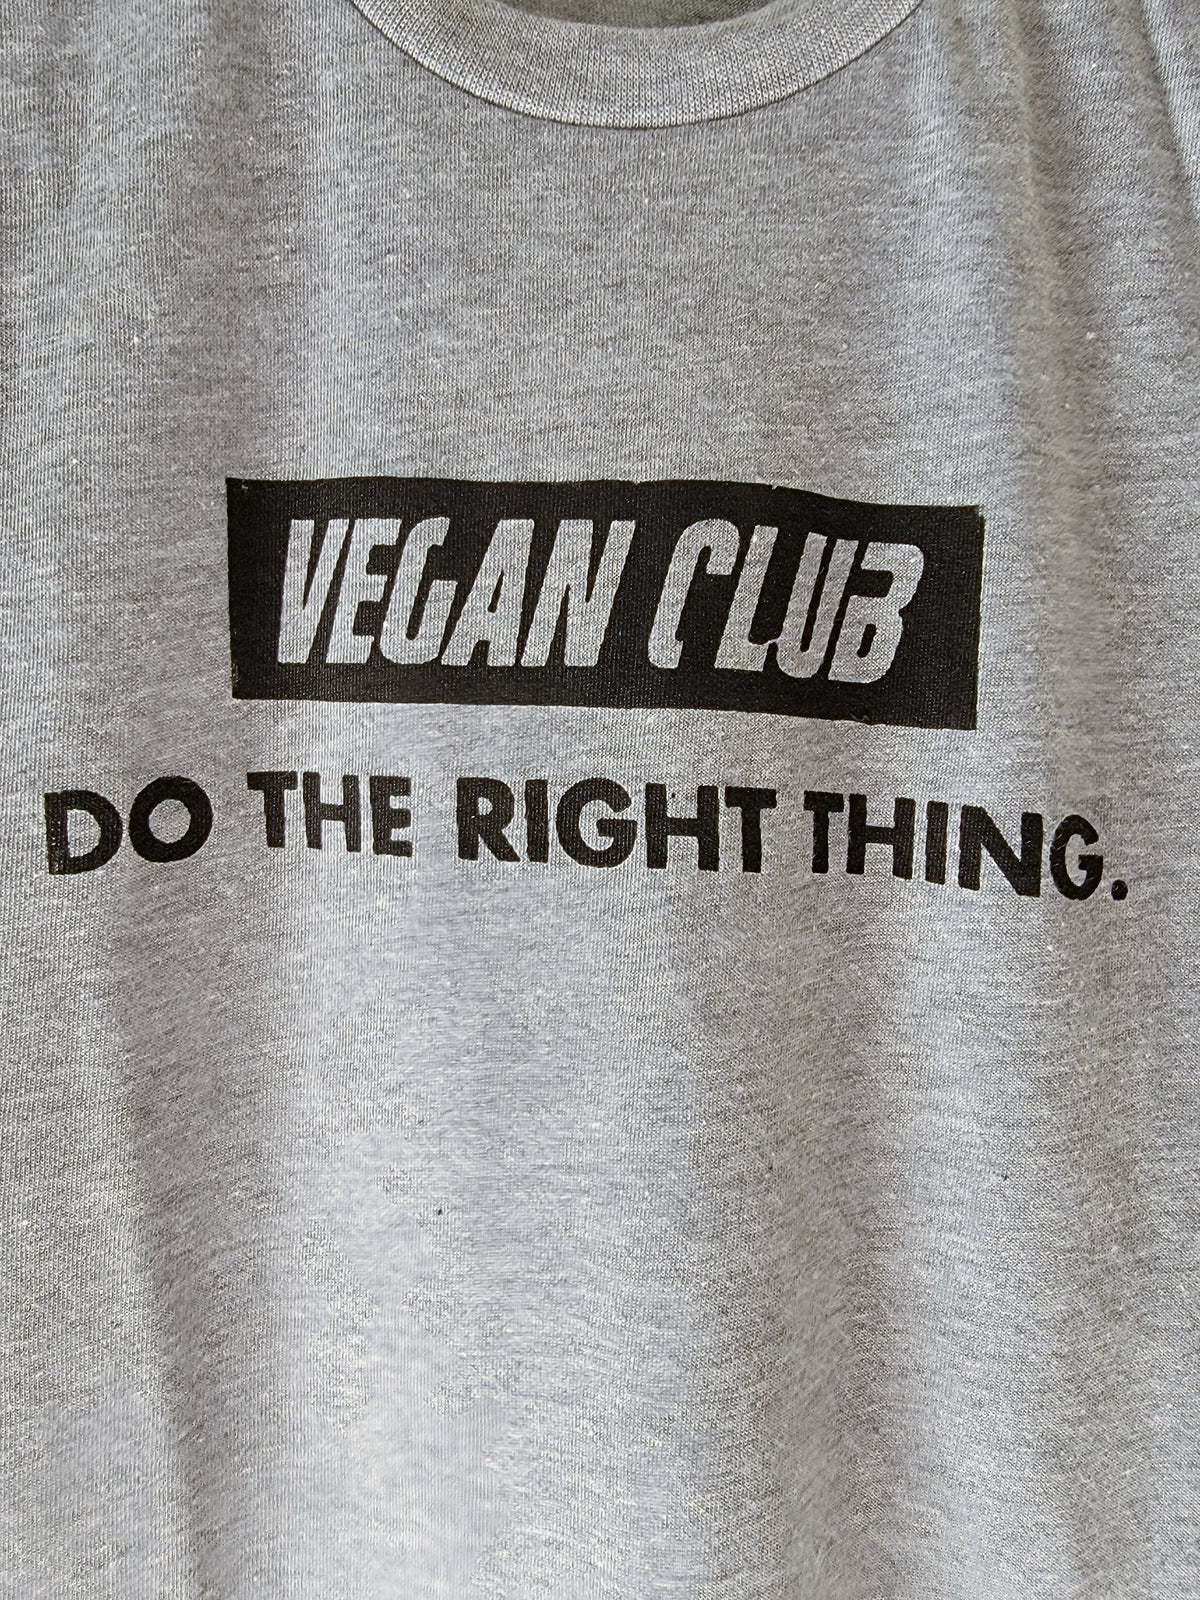 Do the Right Thing T-shirt Vegan Club